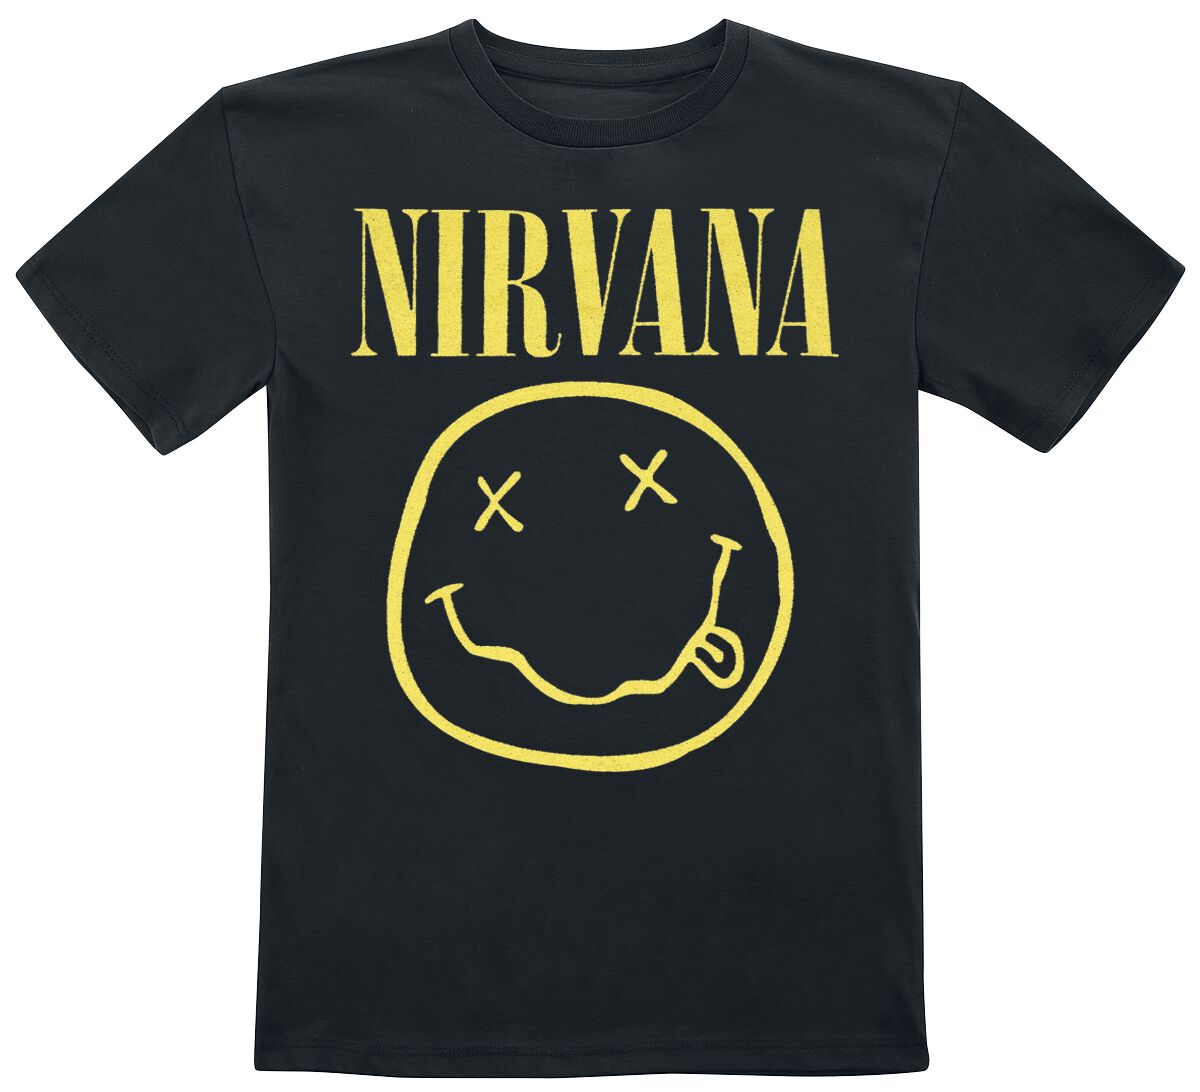 Nirvana T-Shirt für Kleinkinder - Kids - Smiley - für Mädchen & Jungen - schwarz  - Lizenziertes Merchandise!